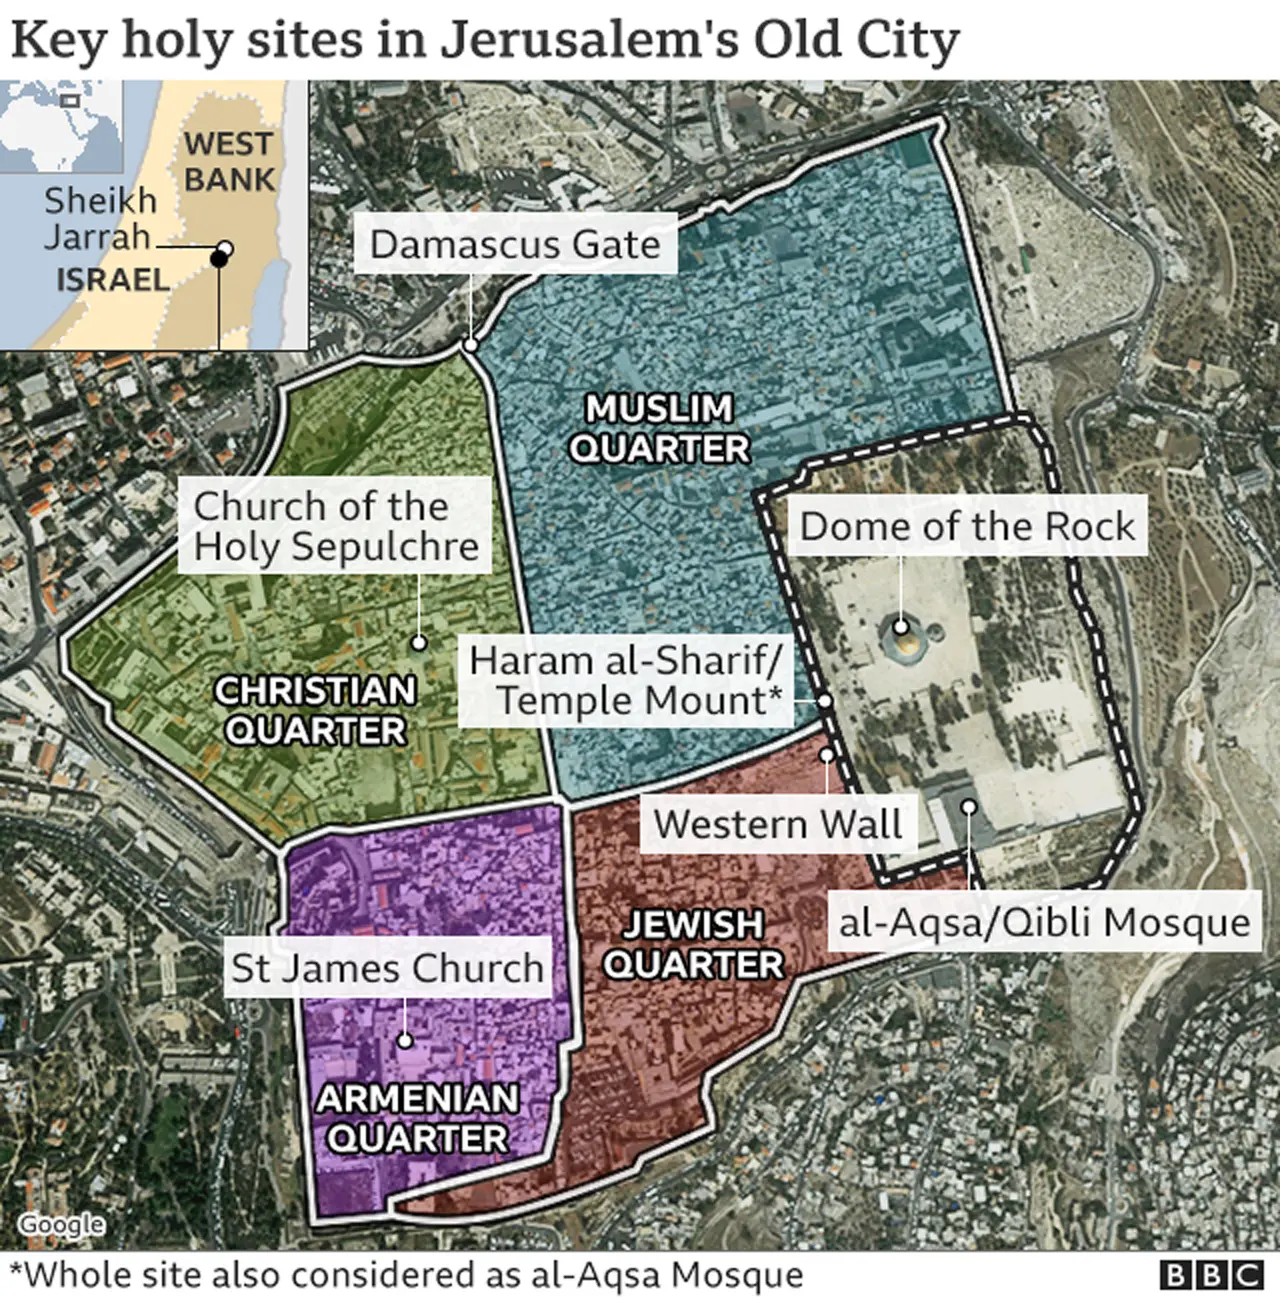 Map of Jerusalem key holy sites